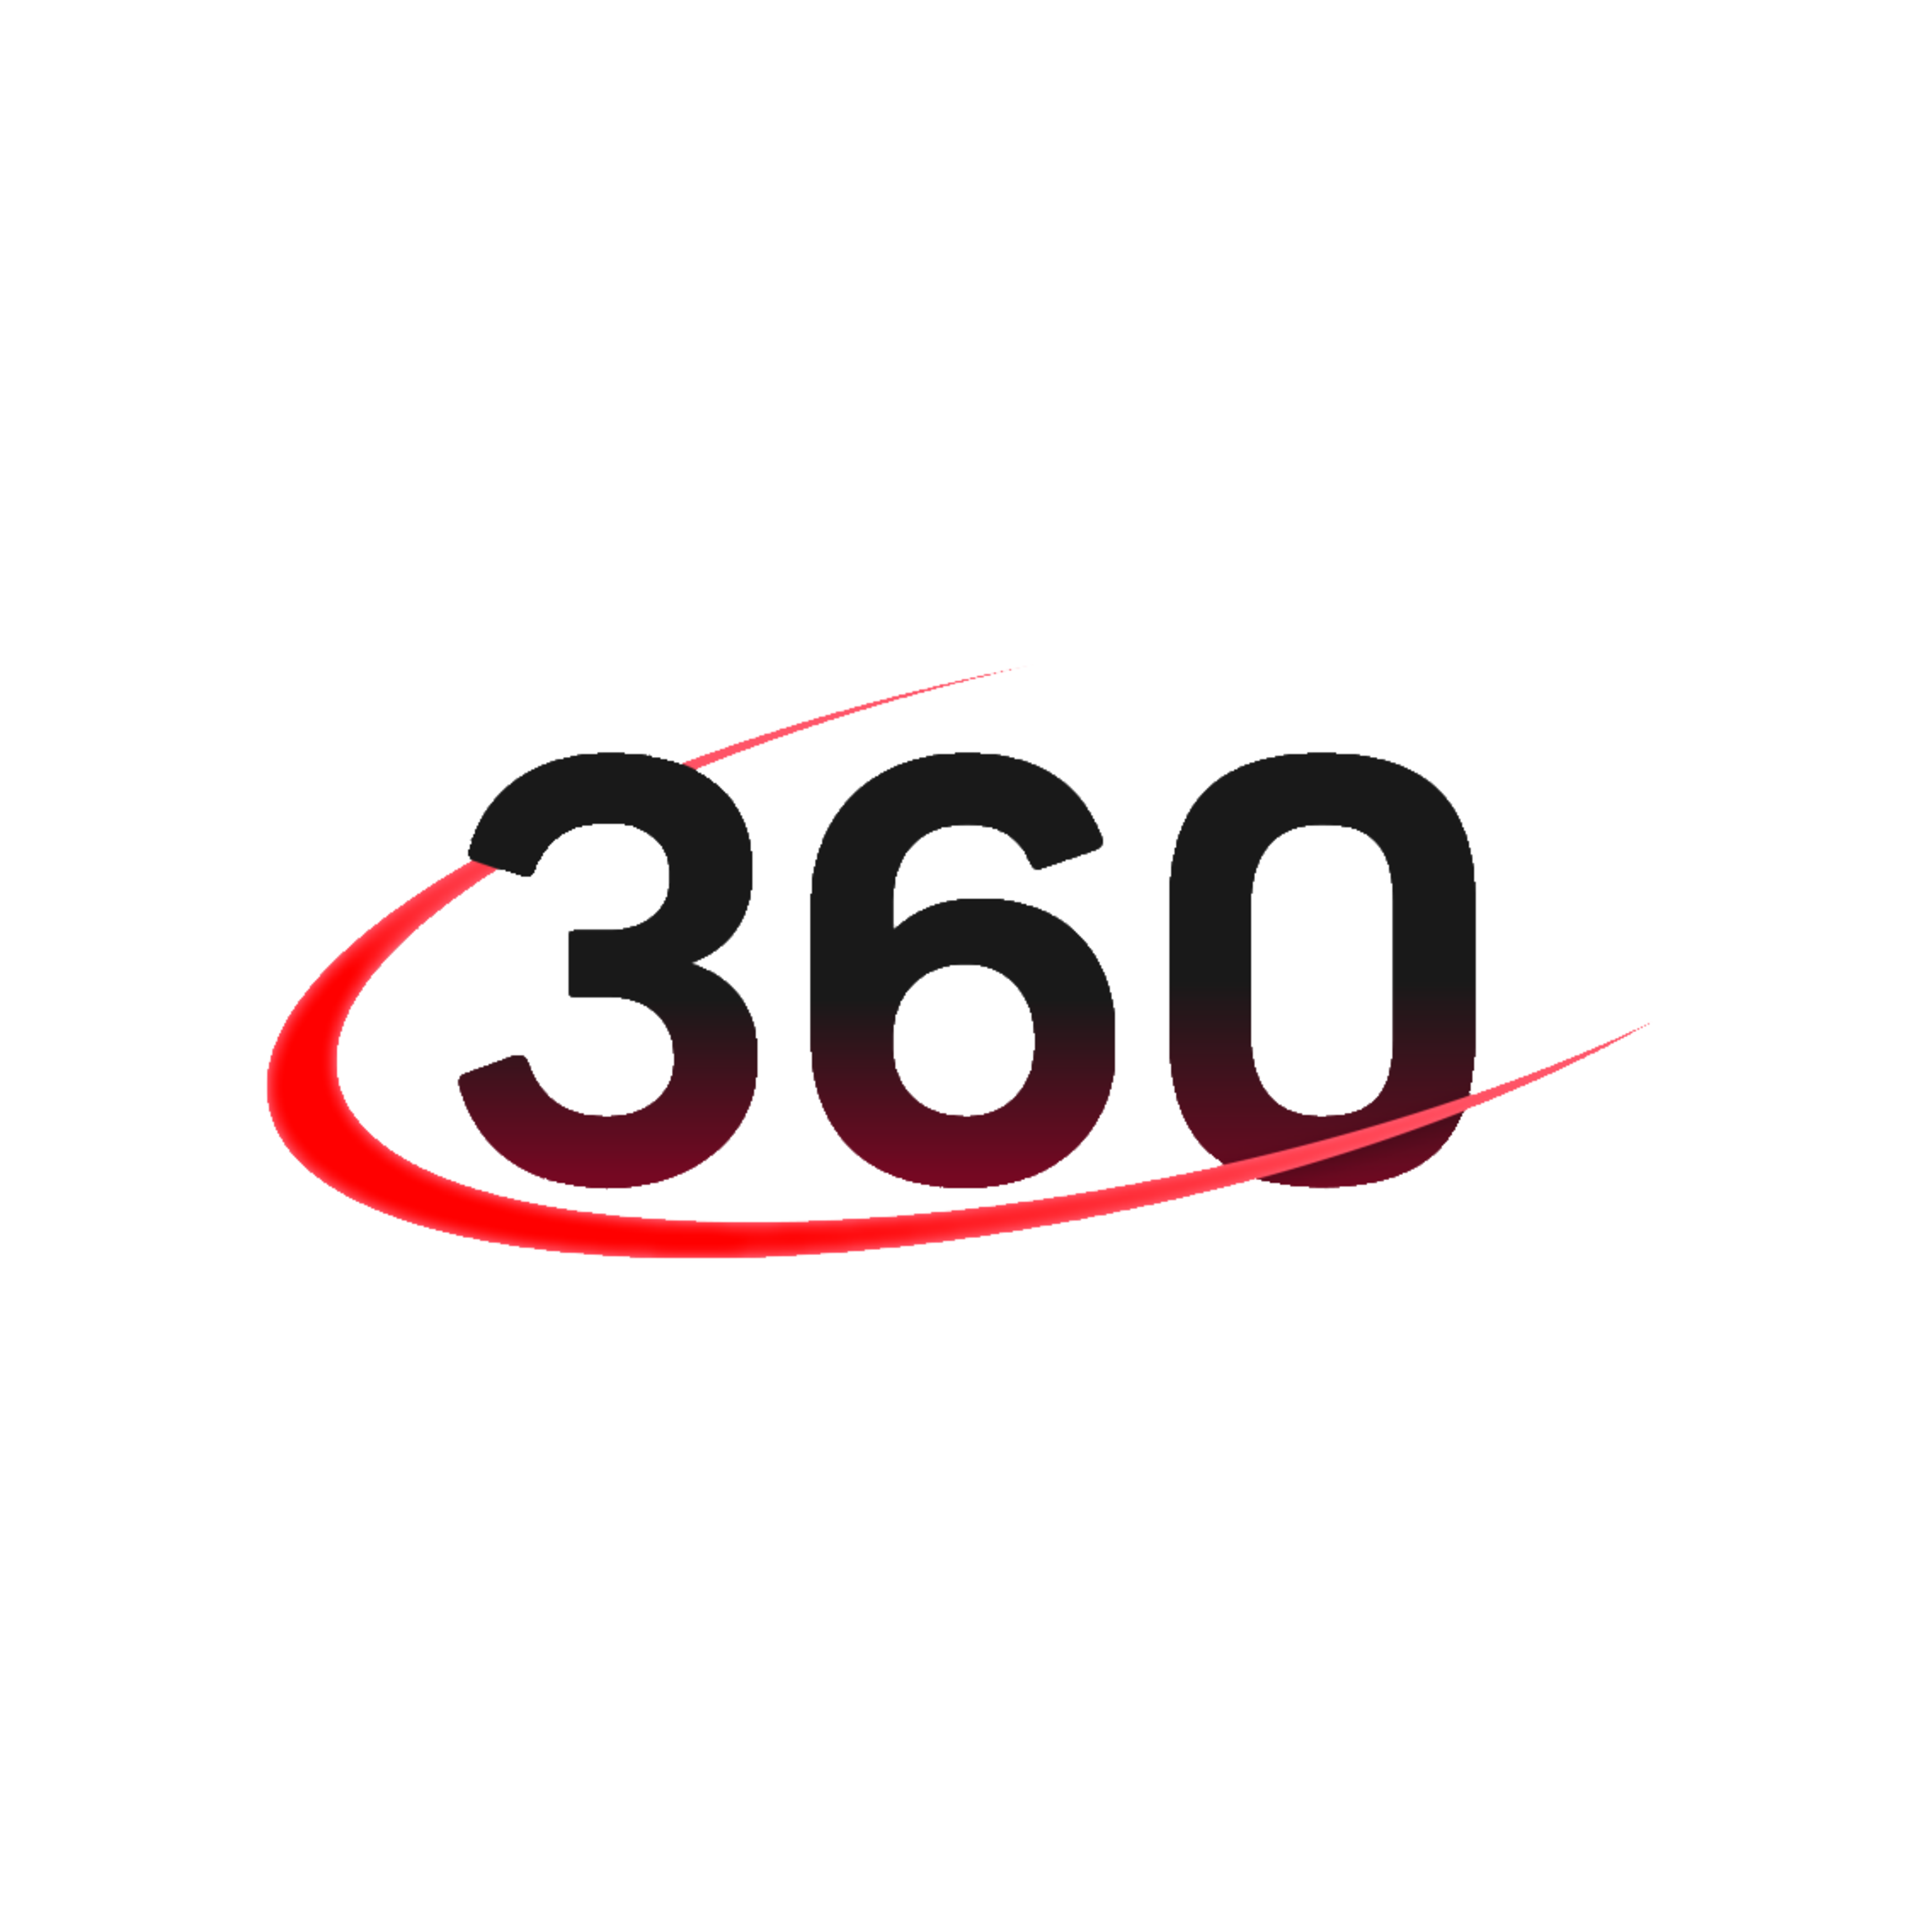 Эфир телеканала 360. Логотип 360 градусов. Канал 360. Канал 360 логотип. 360 ТВ ру.